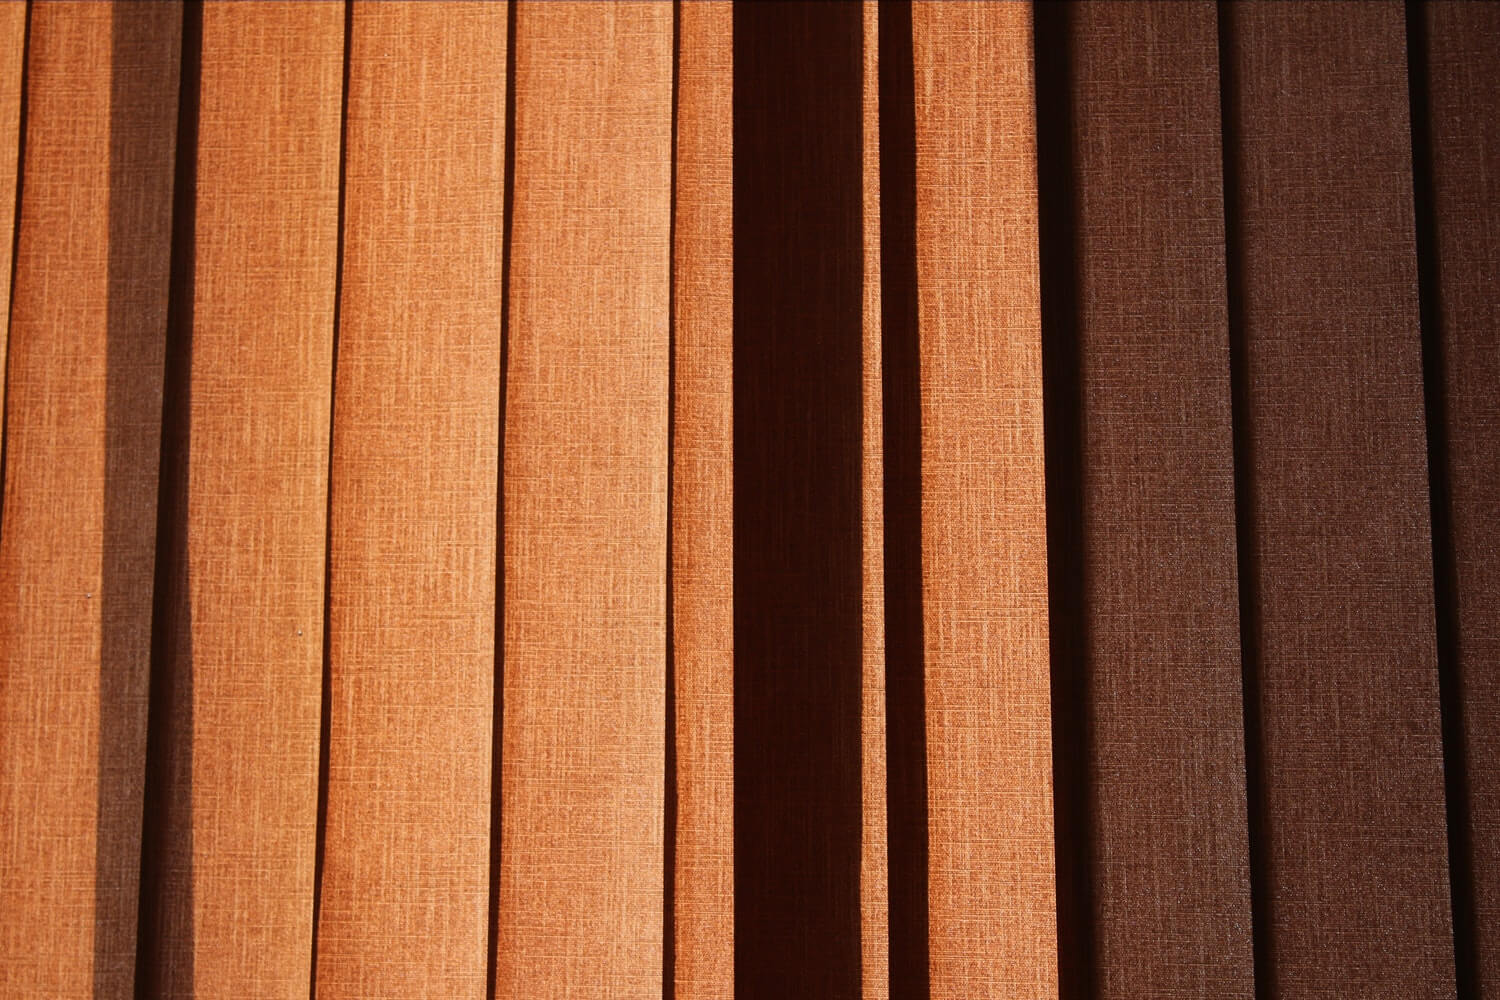 Matching Existing Hardwood To New, Matching Hardwood Floors